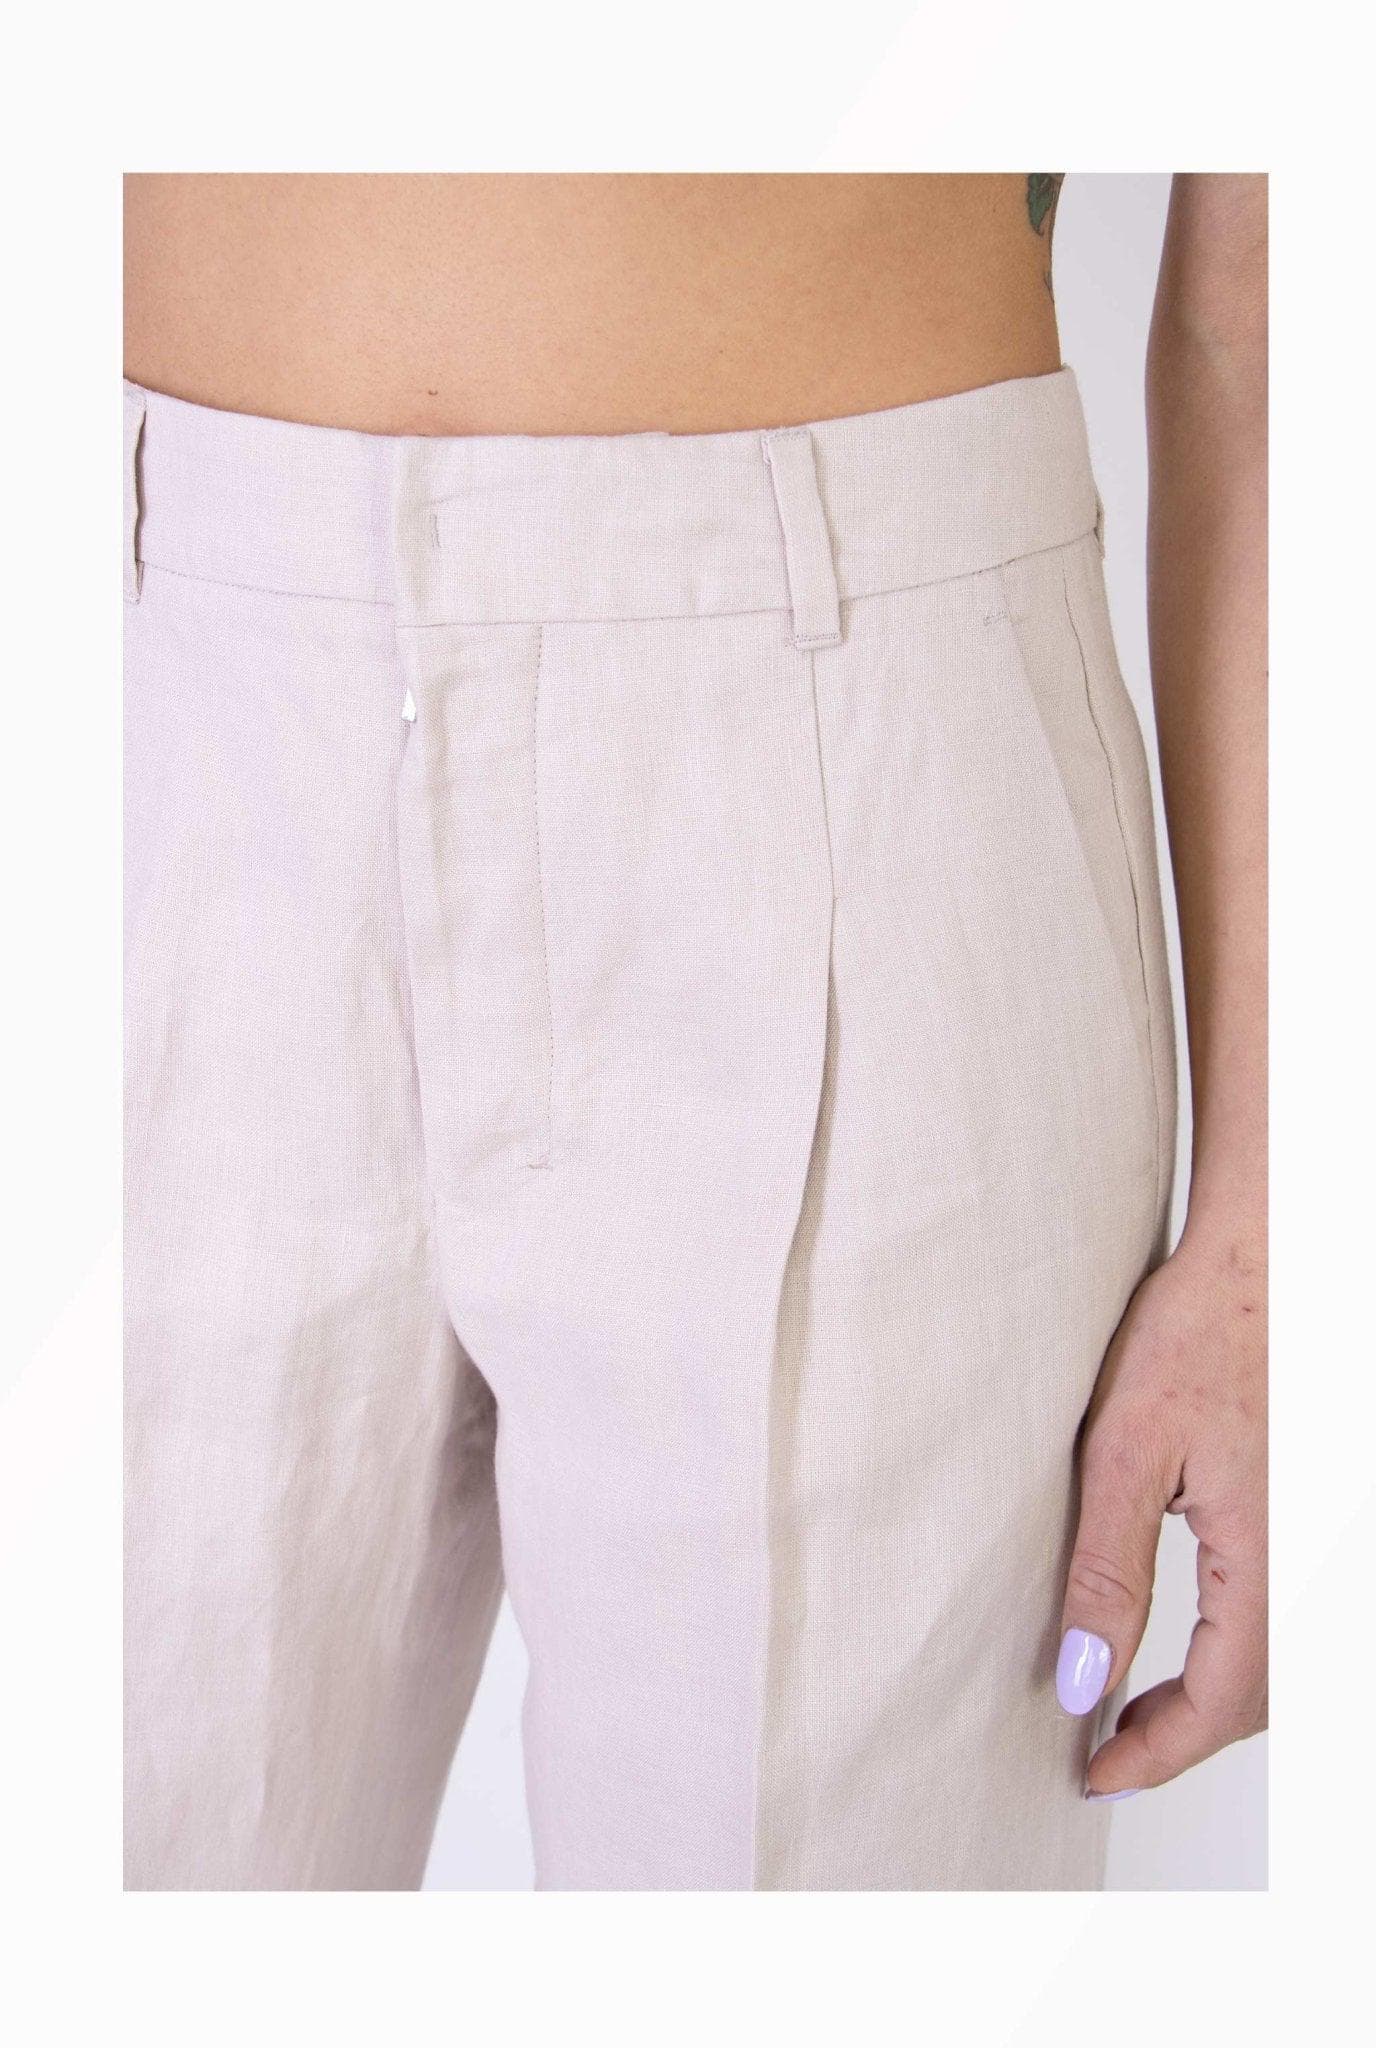 Pantalone in lino con pinces- Max Mara -Giorgioquinto